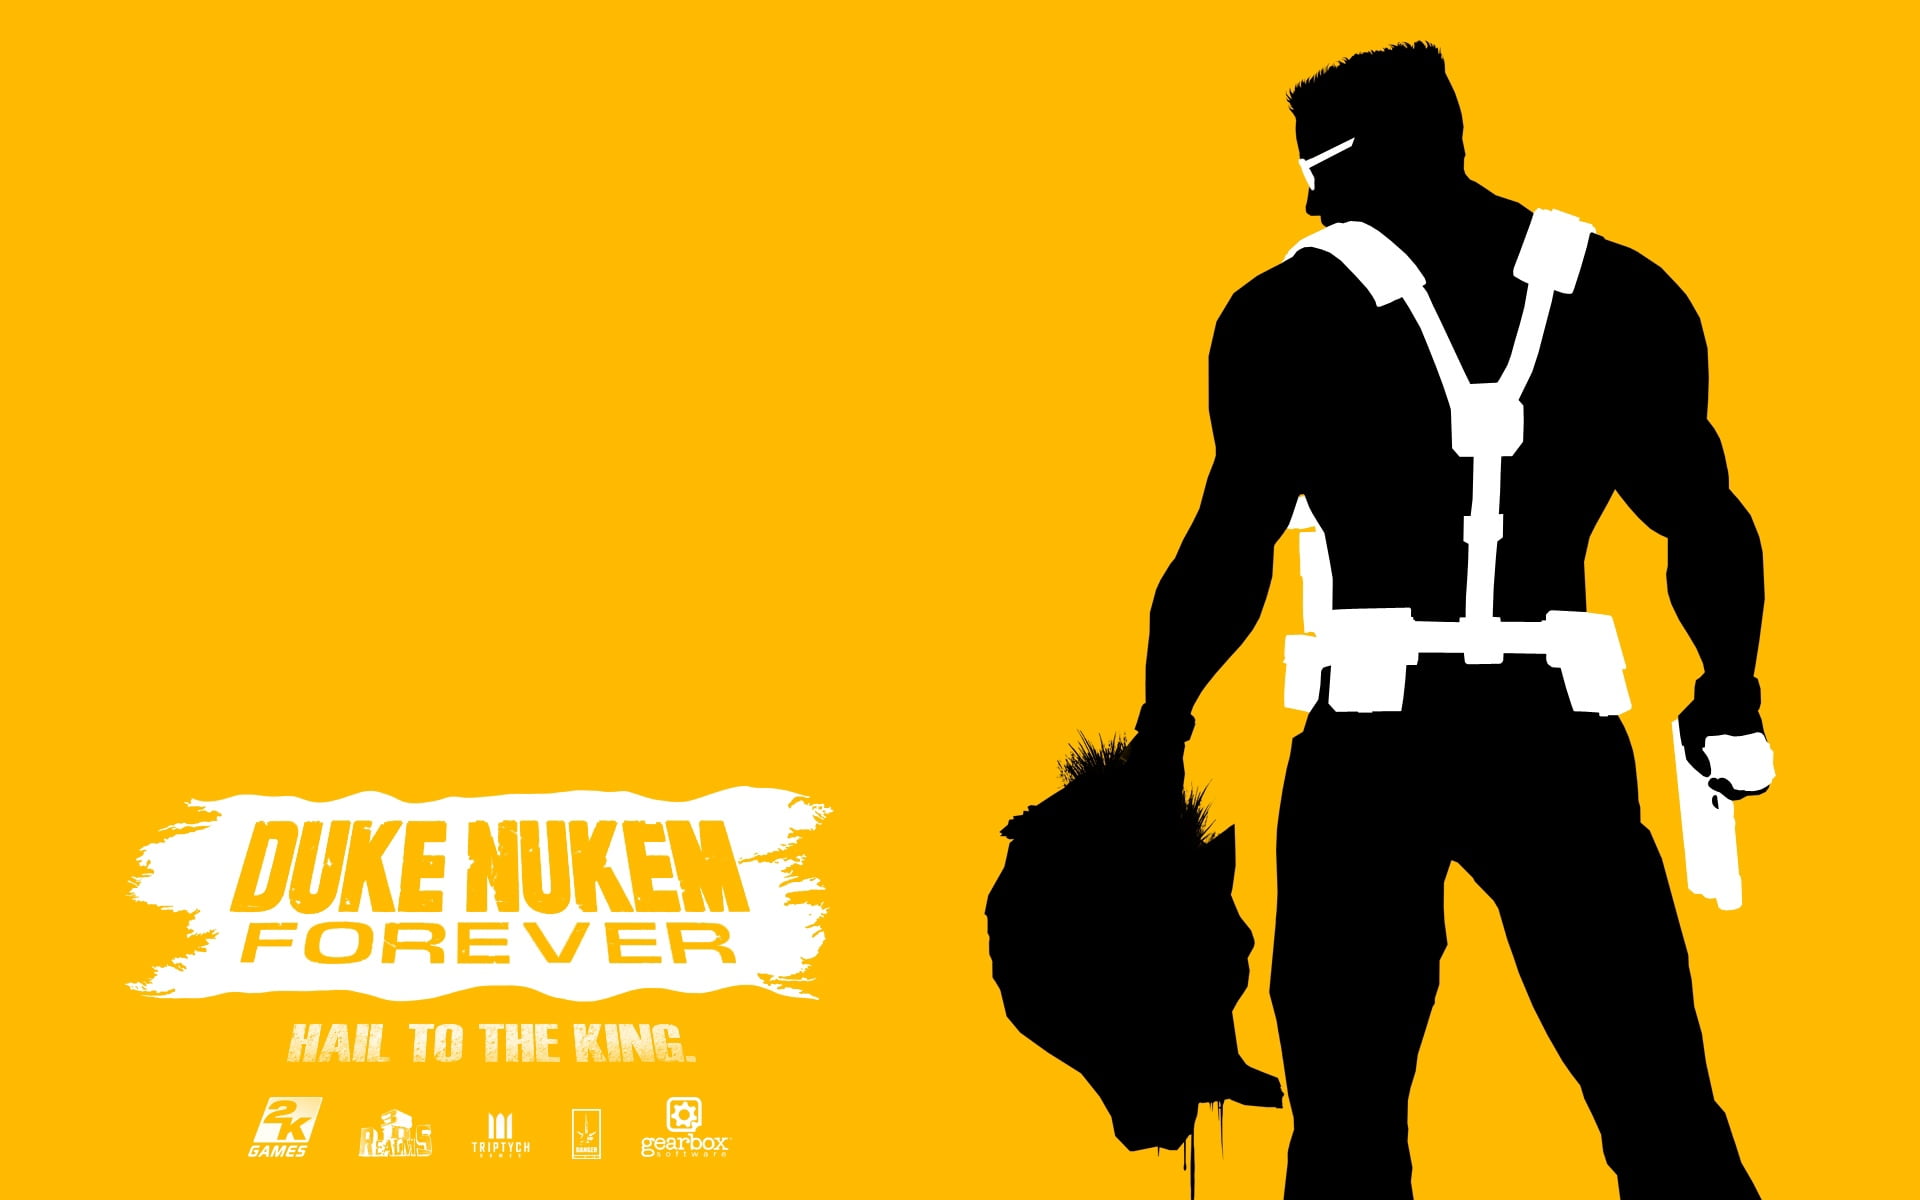 Duke Nukem Forever poster, sant john, back, head, gun, vector